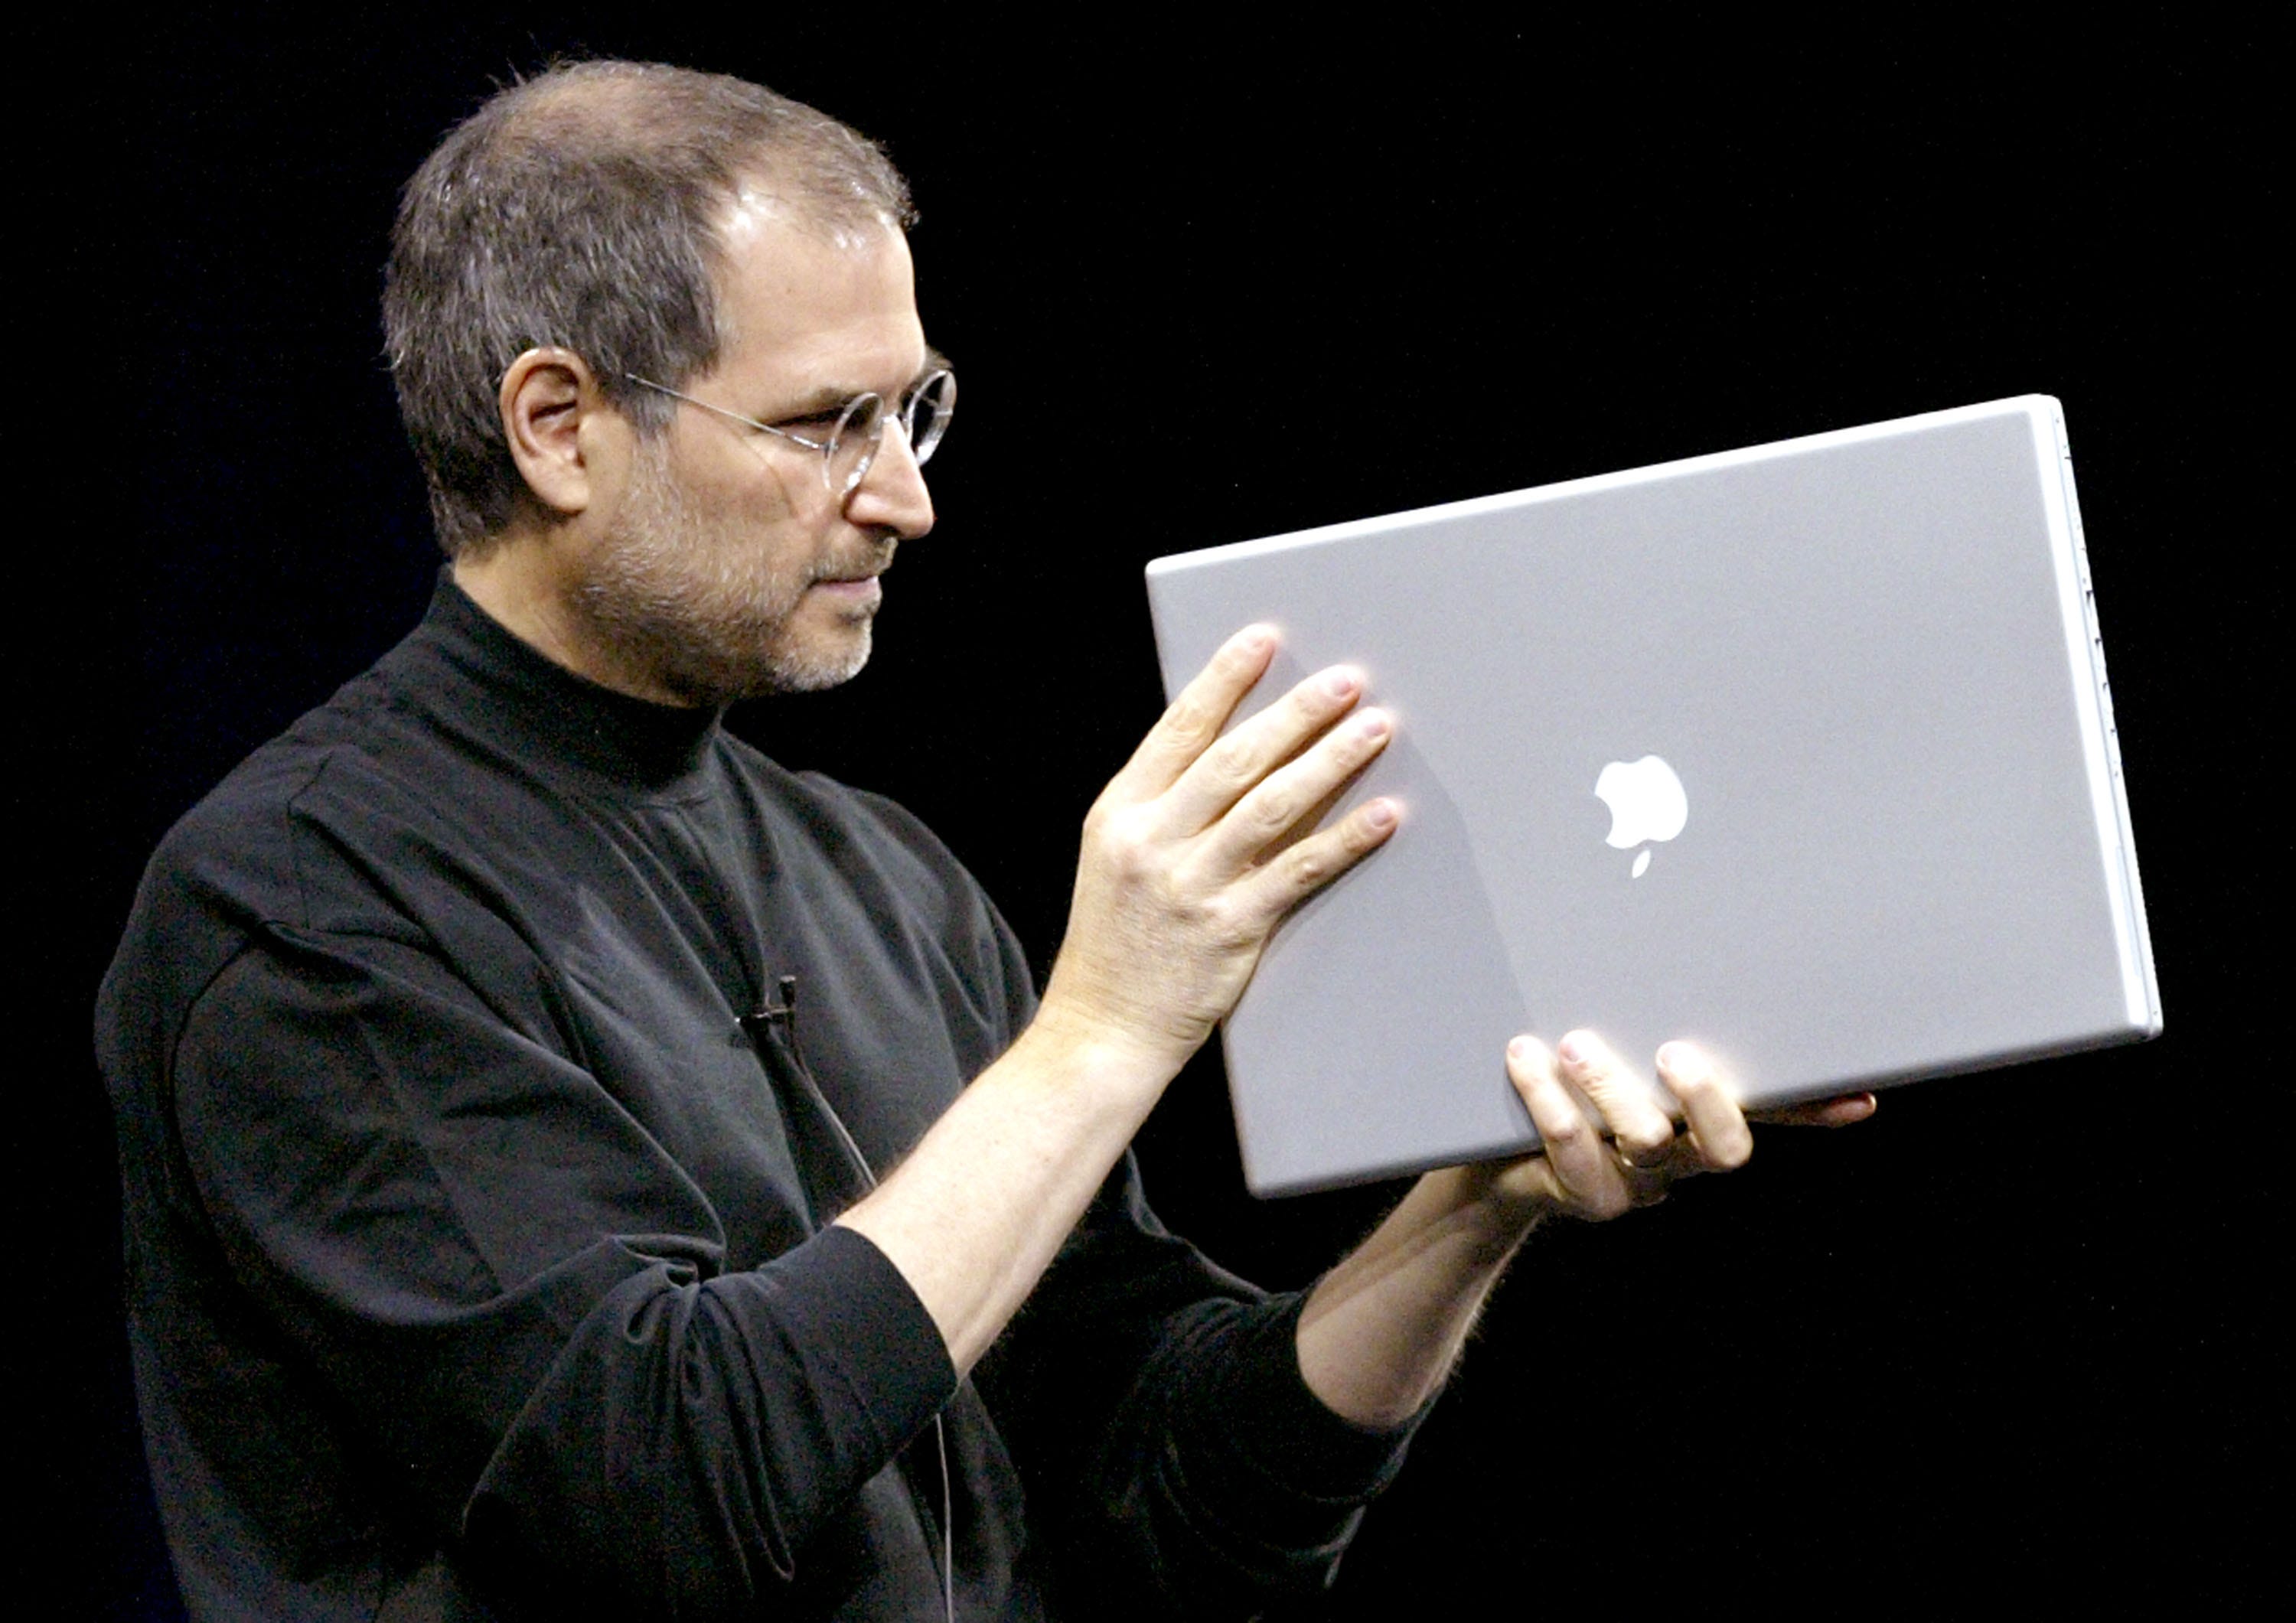 Steve Jobs trägt seinen charakteristischen schwarzen Rollkragenpullover und hält einen Apple-Laptop in der Hand